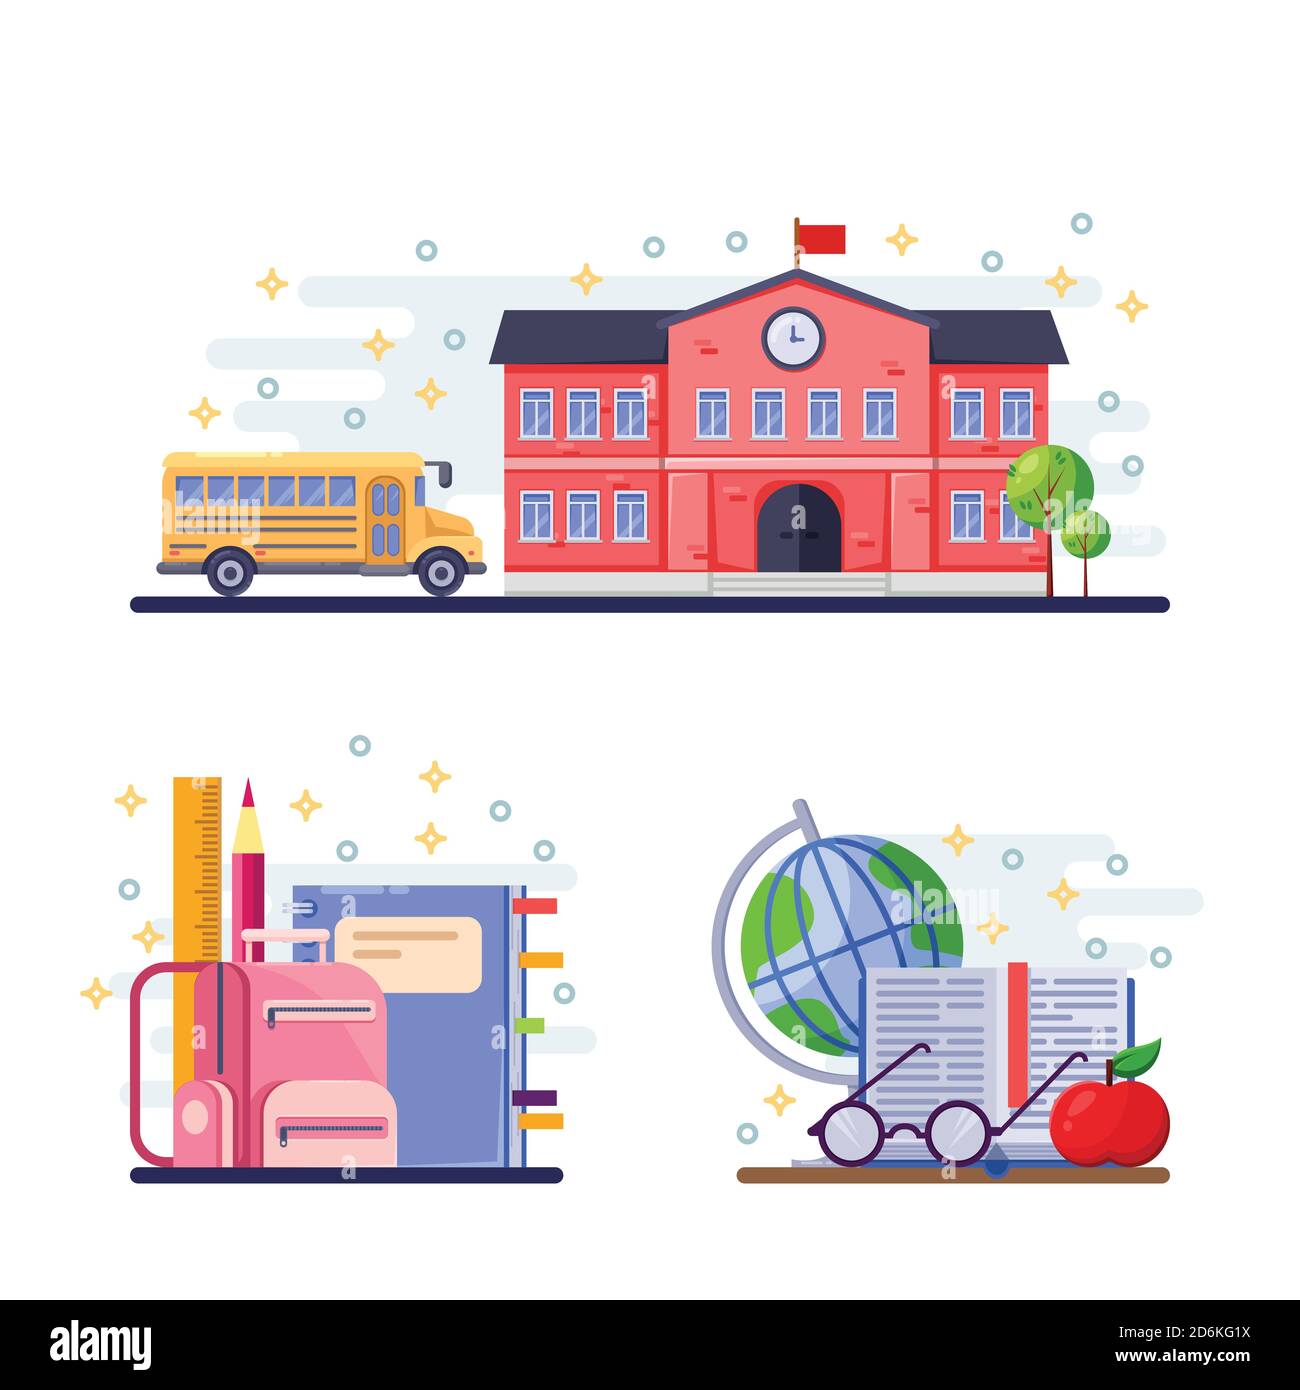 Immagine piatta del vettore di ritorno alla scuola. Edificio scolastico, autobus giallo e forniture di cancelleria. Icone didattiche ed elementi di design. Illustrazione Vettoriale